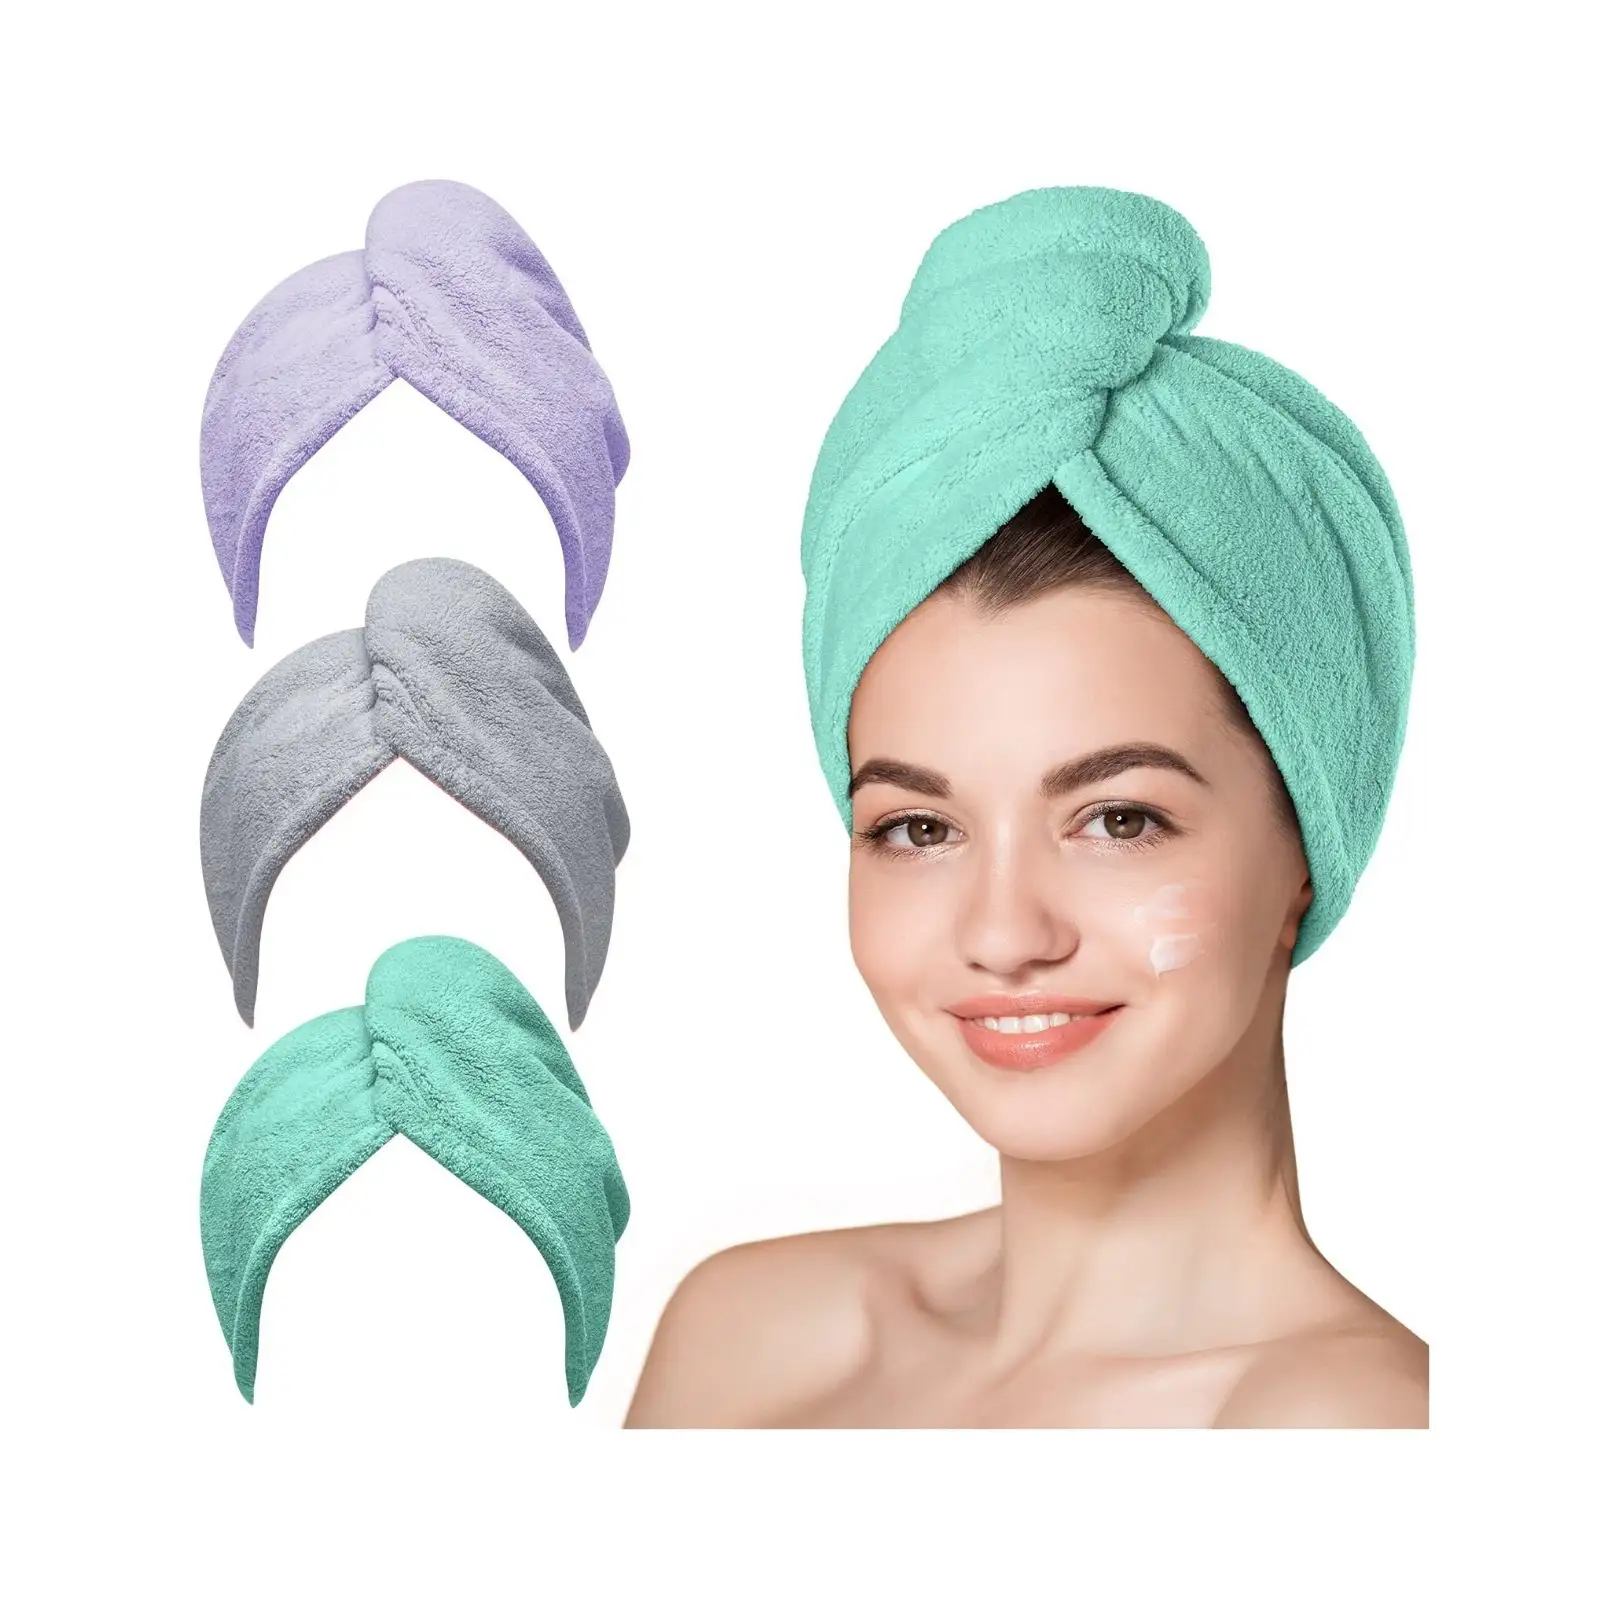 Asciugamano per capelli ad asciugatura rapida turbanti ricci asciugamani in microfibra per asciugamani per parrucchieri avvolgere per le donne che dormono lunghi capelli bagnati anti crespo